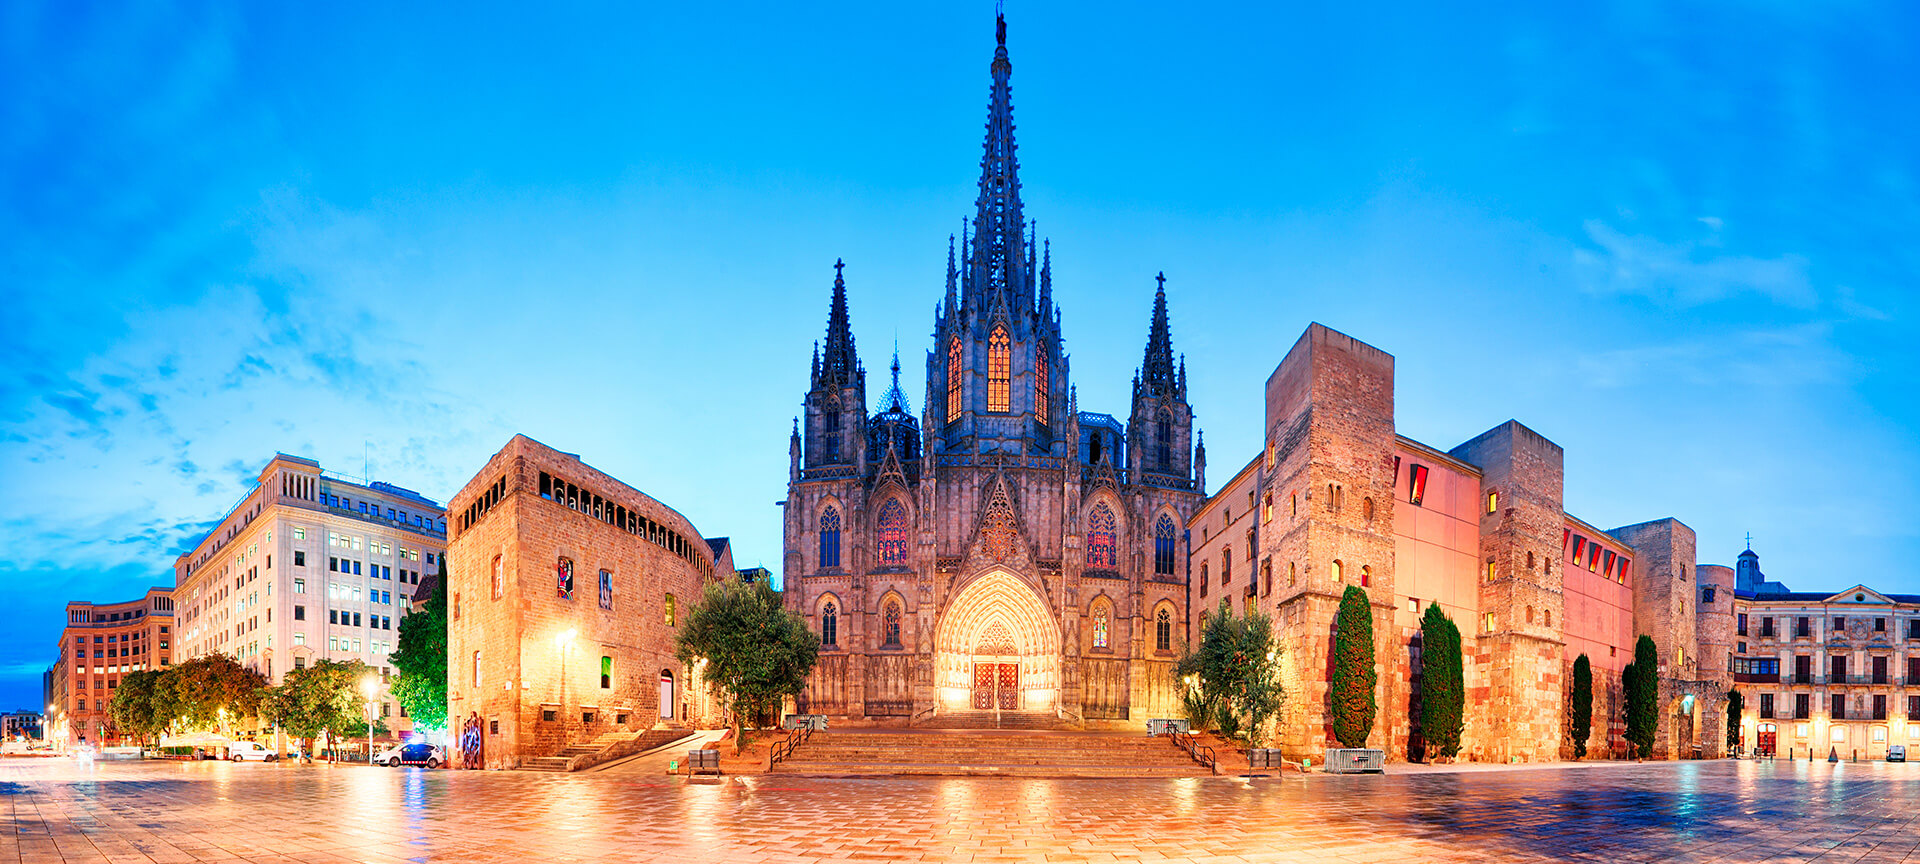 Gotische kathedraal bij avondschemering in Europese stad.